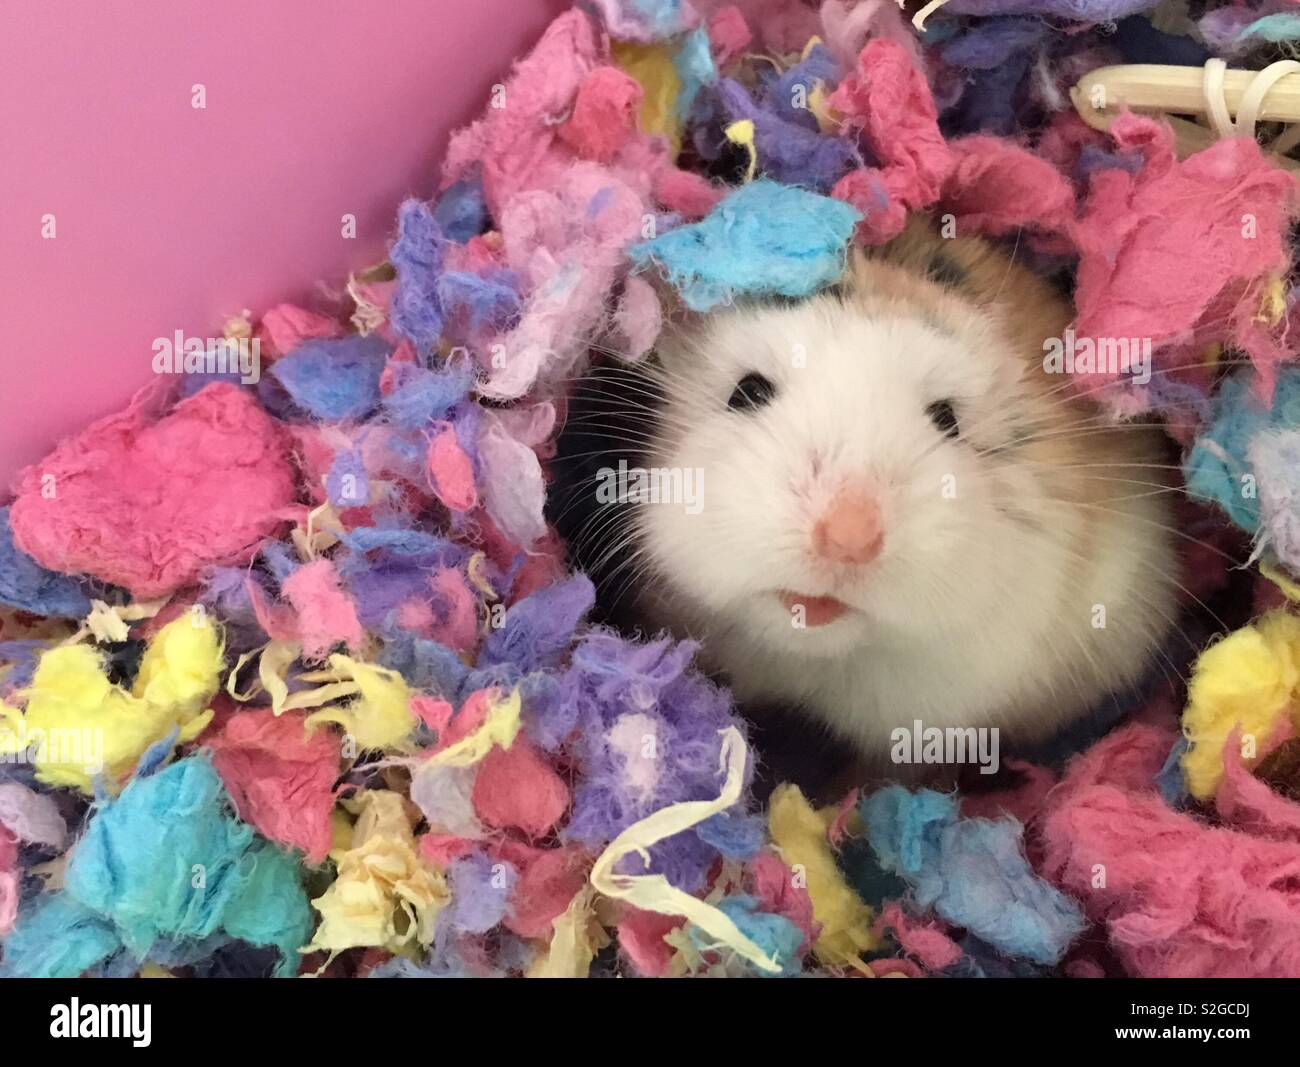 Roborovski Dwarf Hamster hiding in multicoloured bedding. Stock Photo